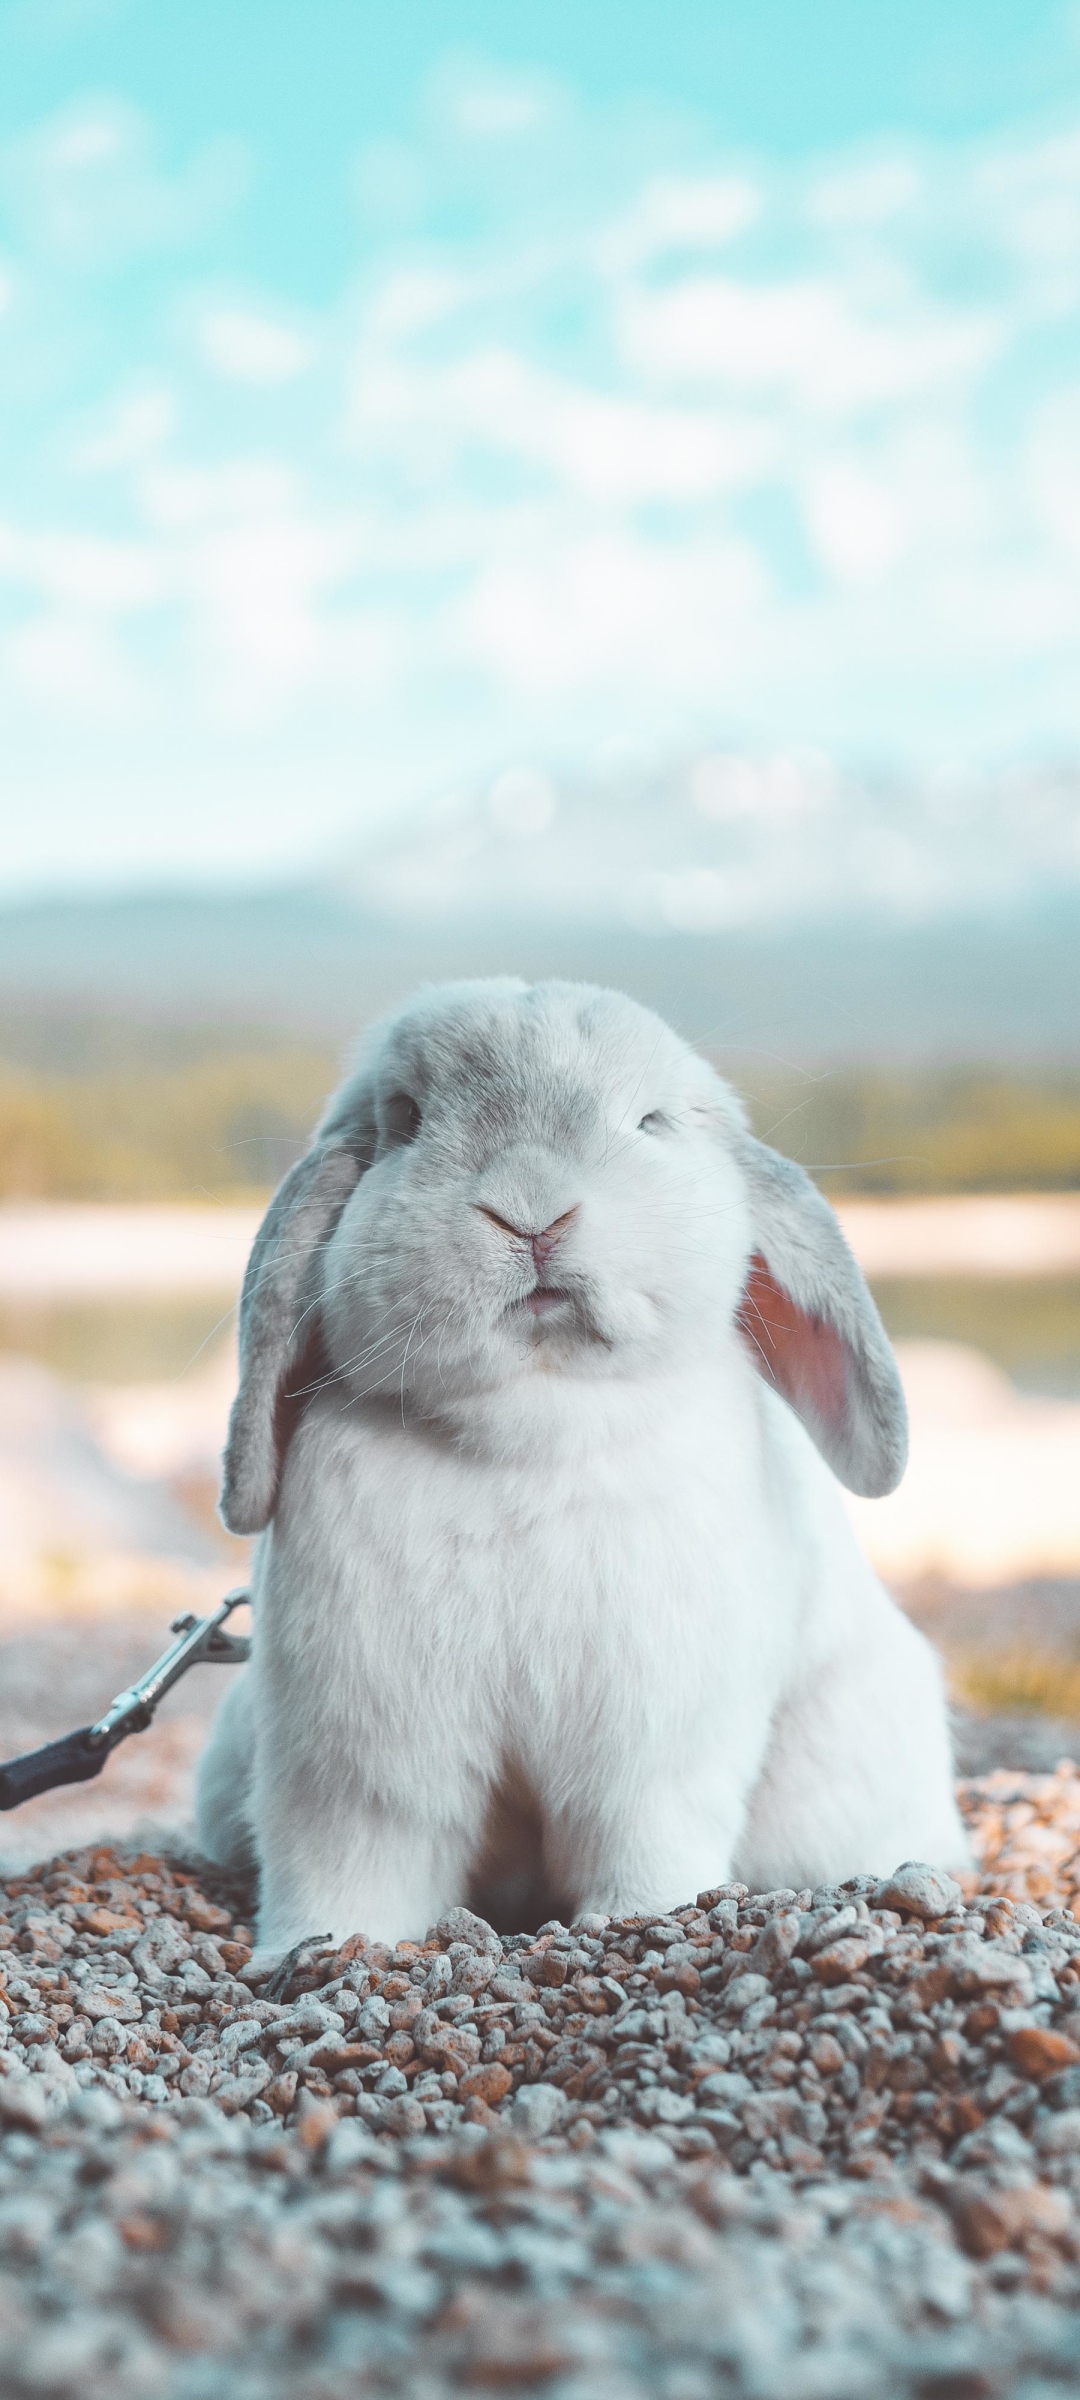 Best Bunny iPhone HD Wallpapers  iLikeWallpaper